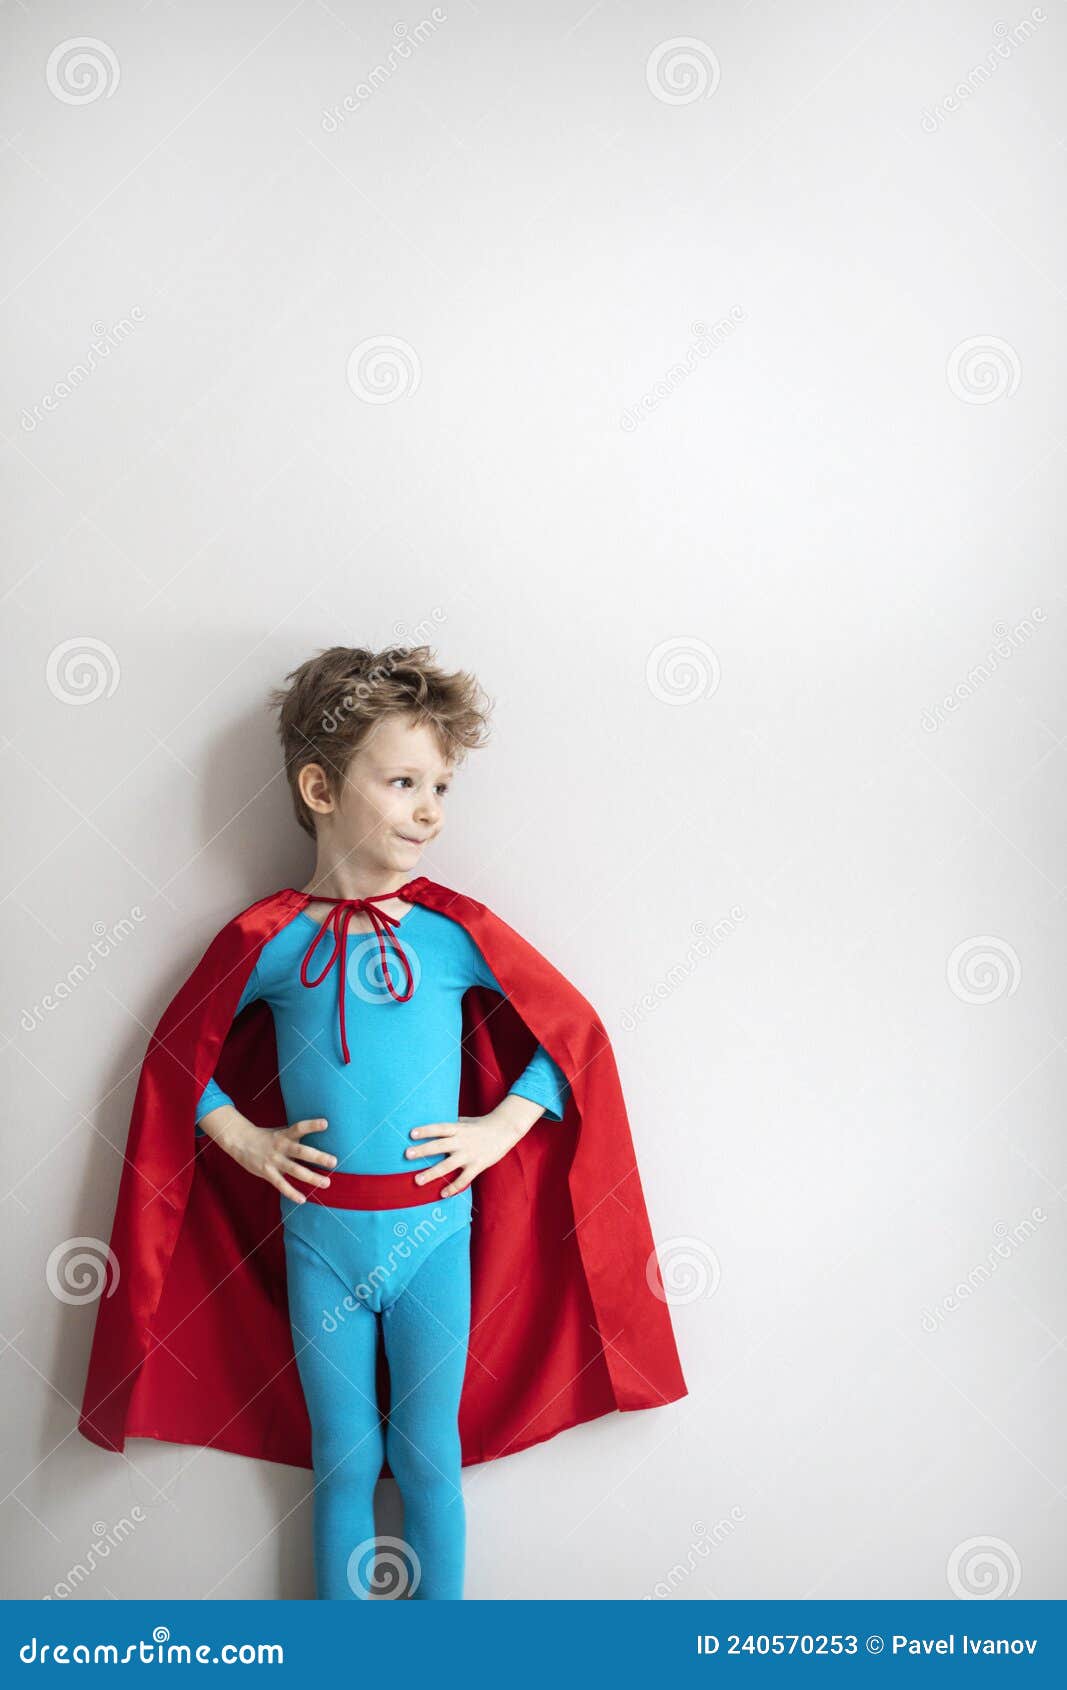 Superhéroe De Juego Infantil. Niño De Ensueño Con Traje De Superhéroe Azul  Y Capa Roja Imagen de archivo - Imagen de azul, vacaciones: 240570253